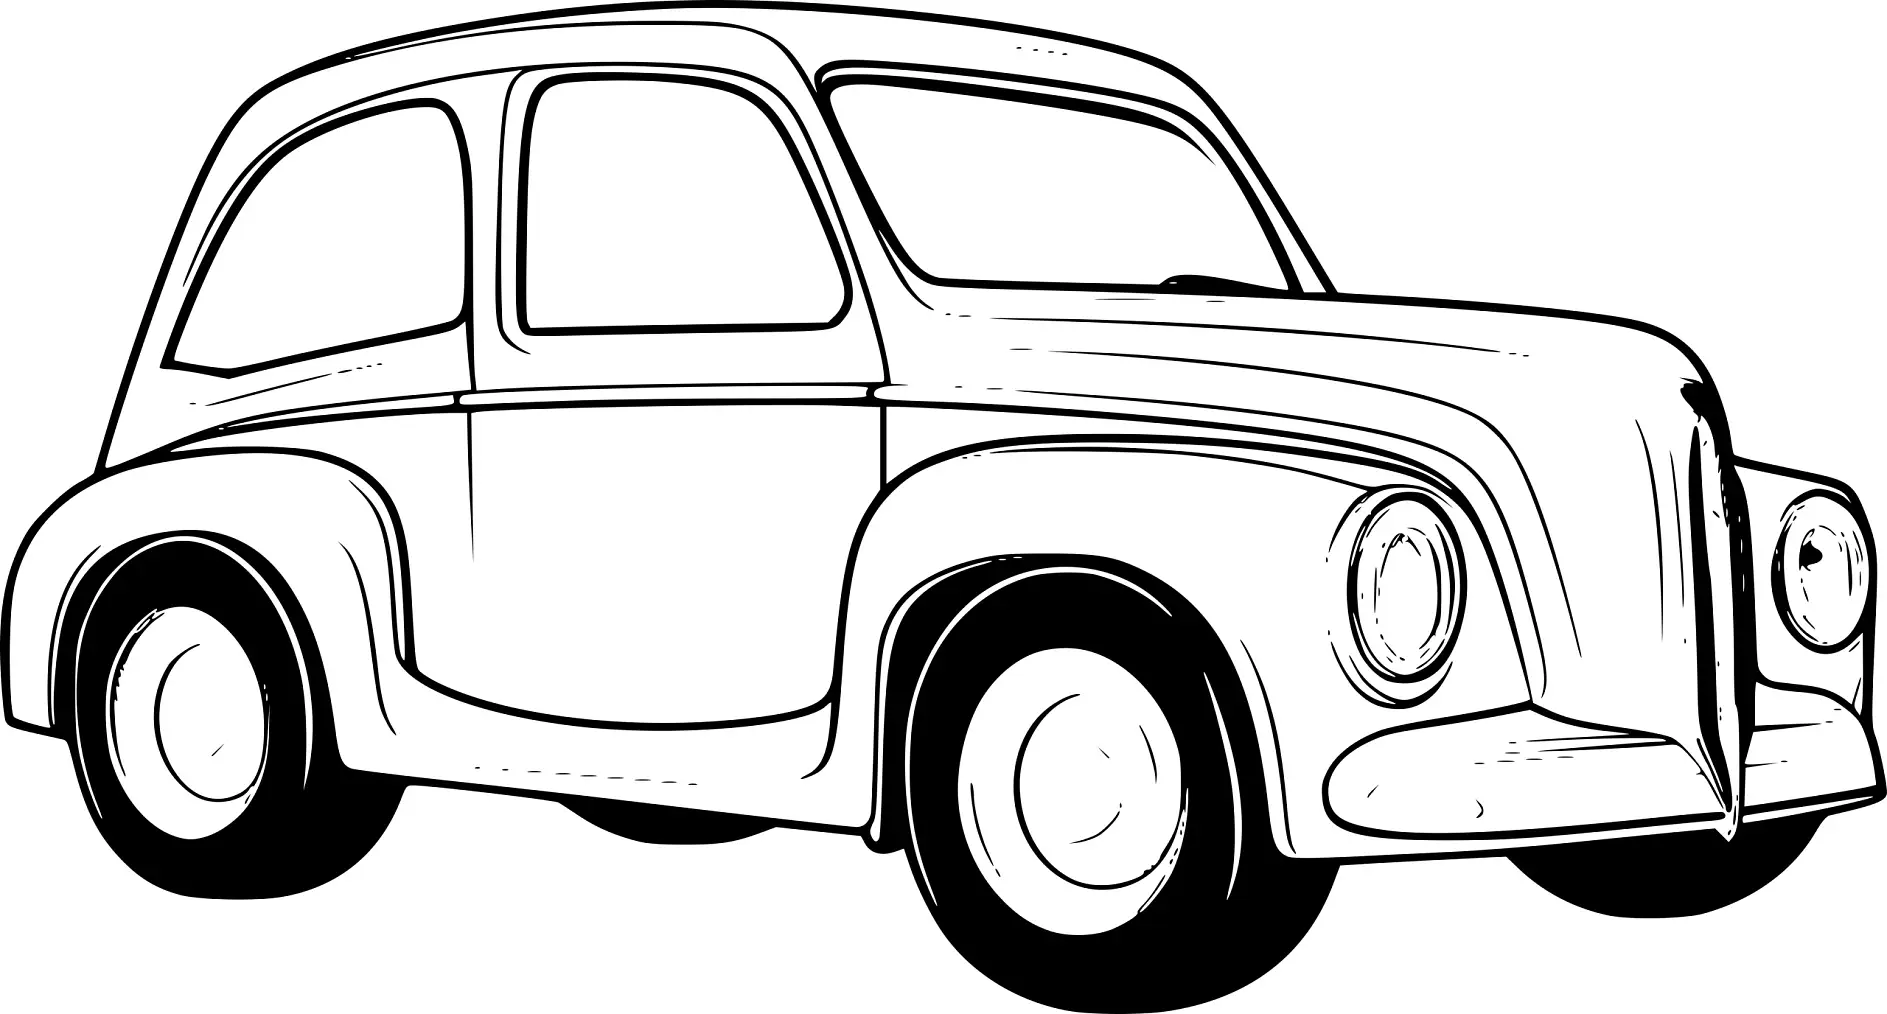 Ausmalbild Auto klassisches Modell mit runden Scheinwerfern und eleganter Karosserie